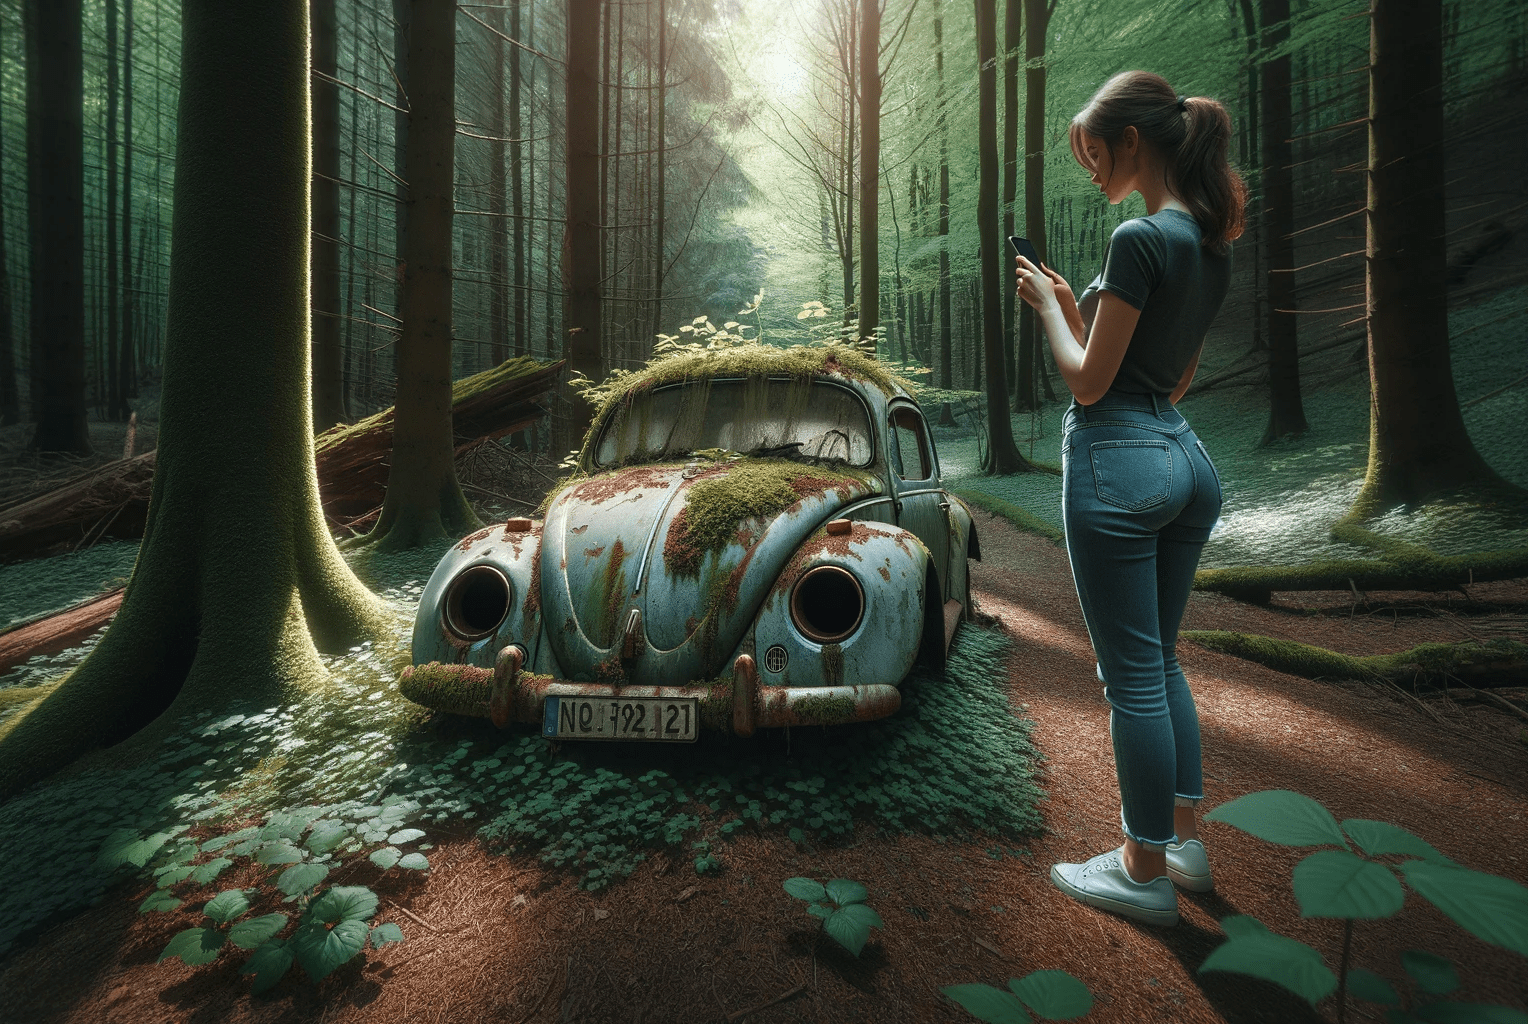 Ein VW Käfer im Wald Lost Places Auto in der Natur mit dem Smartphone fotografiert. Fotografieren und Filmen mit dem Smartphone: Bessere Fotos und Videos mit dem Handy für Freizeit, Hobby und Business